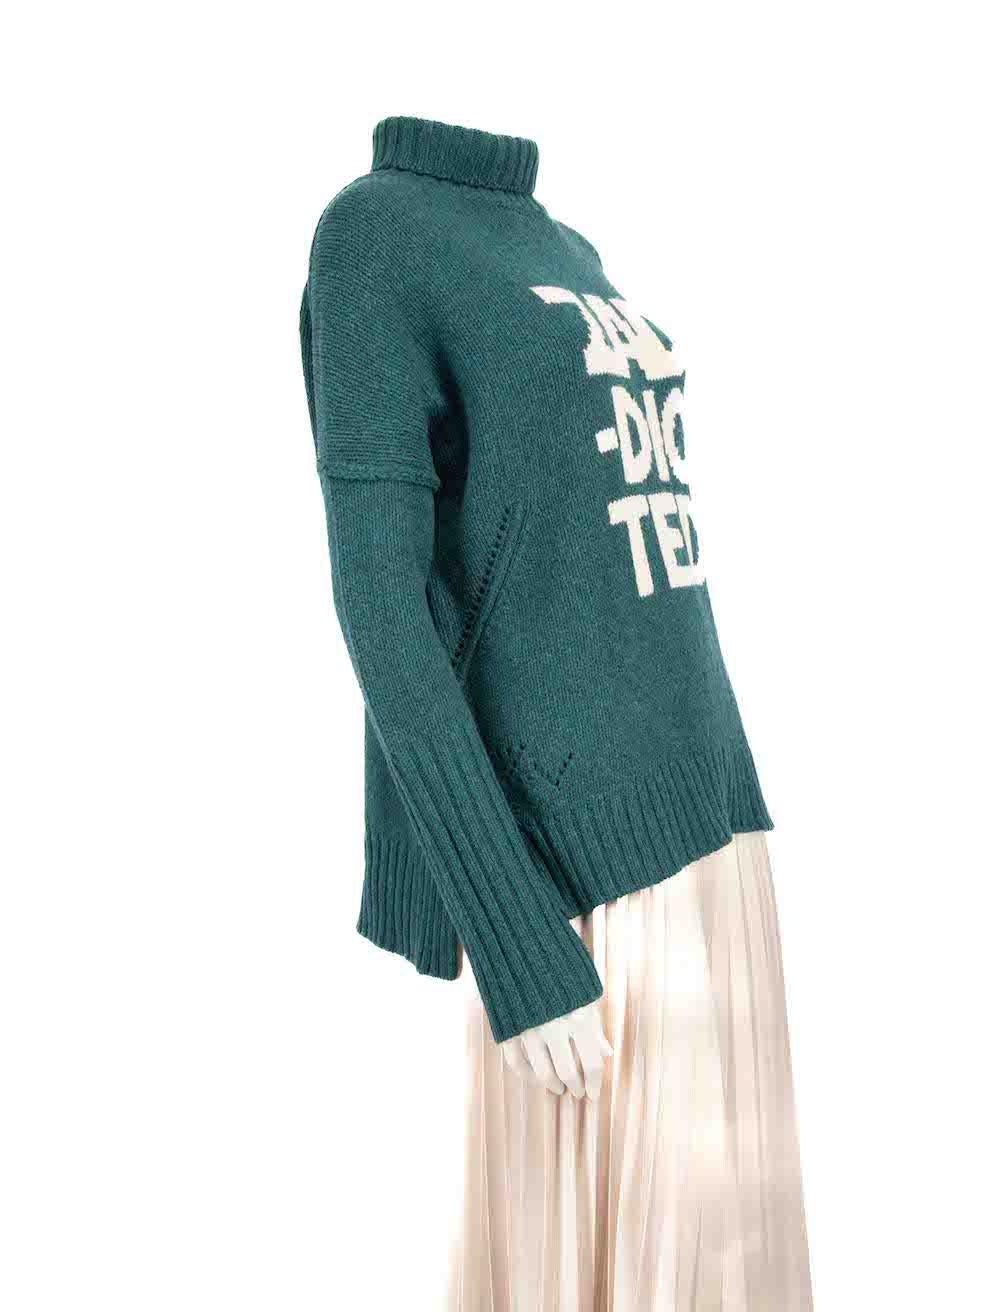 CONDIT ist sehr gut. Der Pullover weist nur minimale Gebrauchsspuren auf. Minimale Verfärbungen auf der Vorderseite dieses gebrauchten Zadig & Voltaire Designer-Wiederverkaufsartikels.
 
 
 
 Einzelheiten
 
 
 Grün
 
 Merinowolle
 
 Pullover